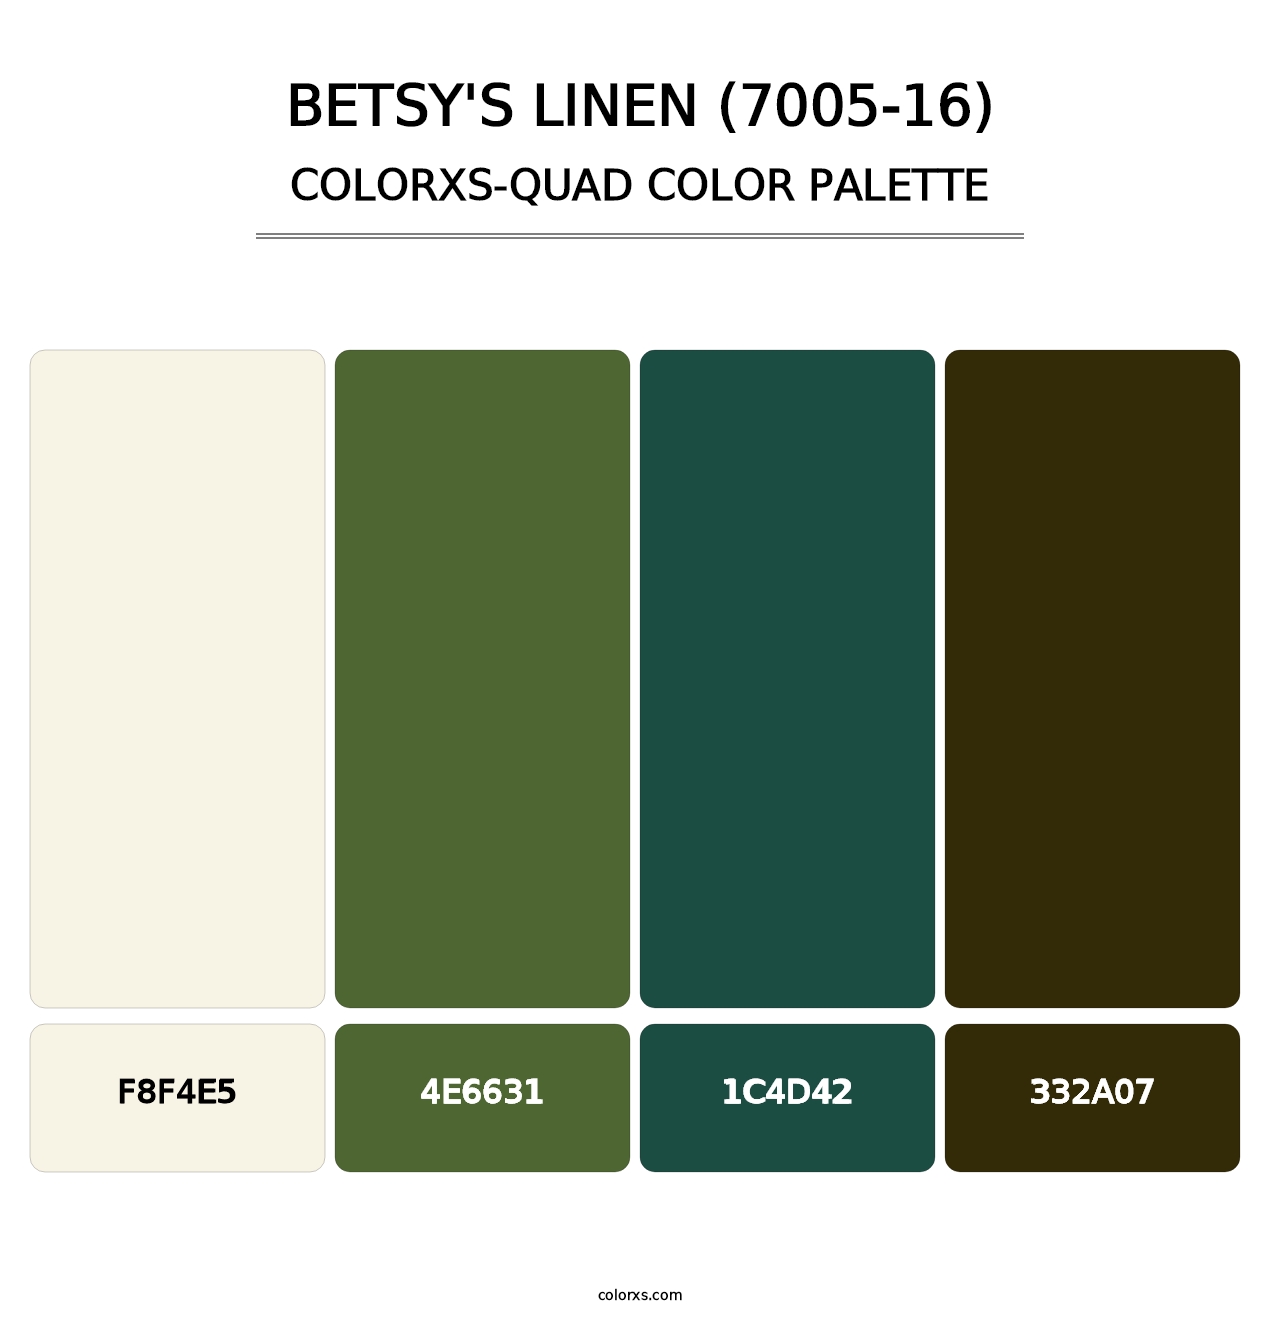 Betsy's Linen (7005-16) - Colorxs Quad Palette